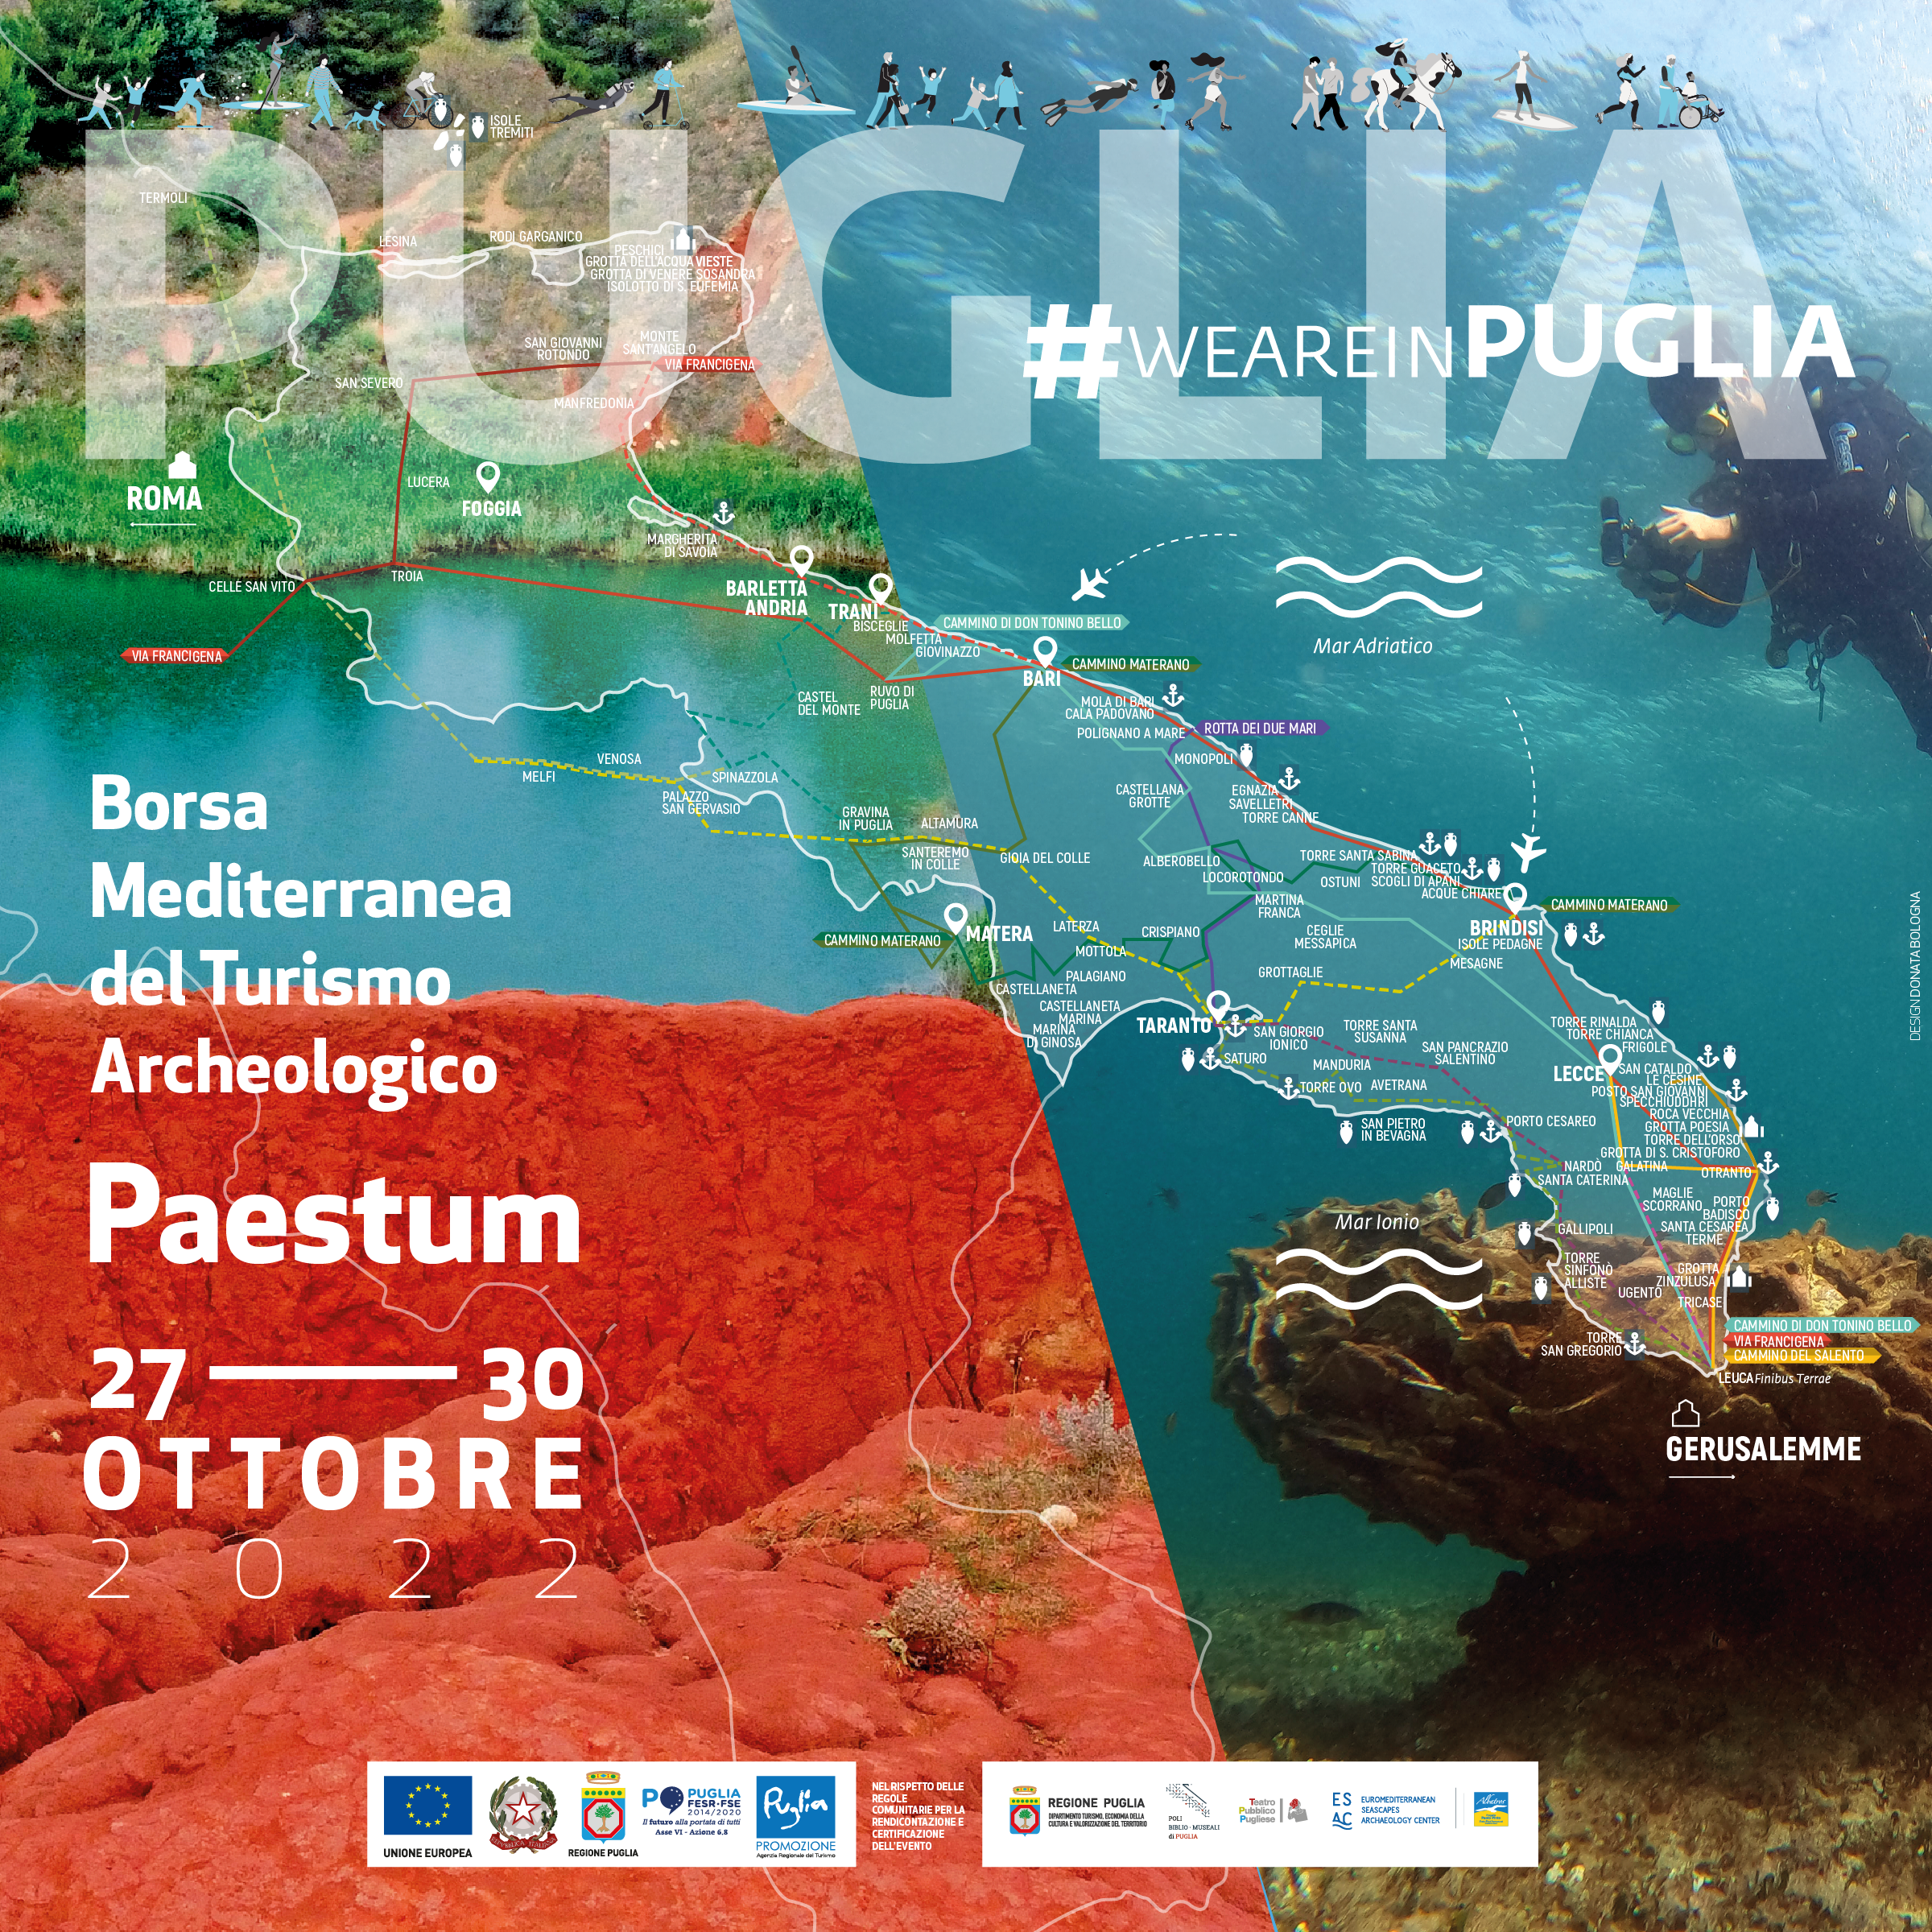 Galleria La Regione Puglia alla Borsa Mediterranea del Turismo Archeologico di Paestum dal 27 al 30 ottobre 2022 - Diapositiva 4 di 5